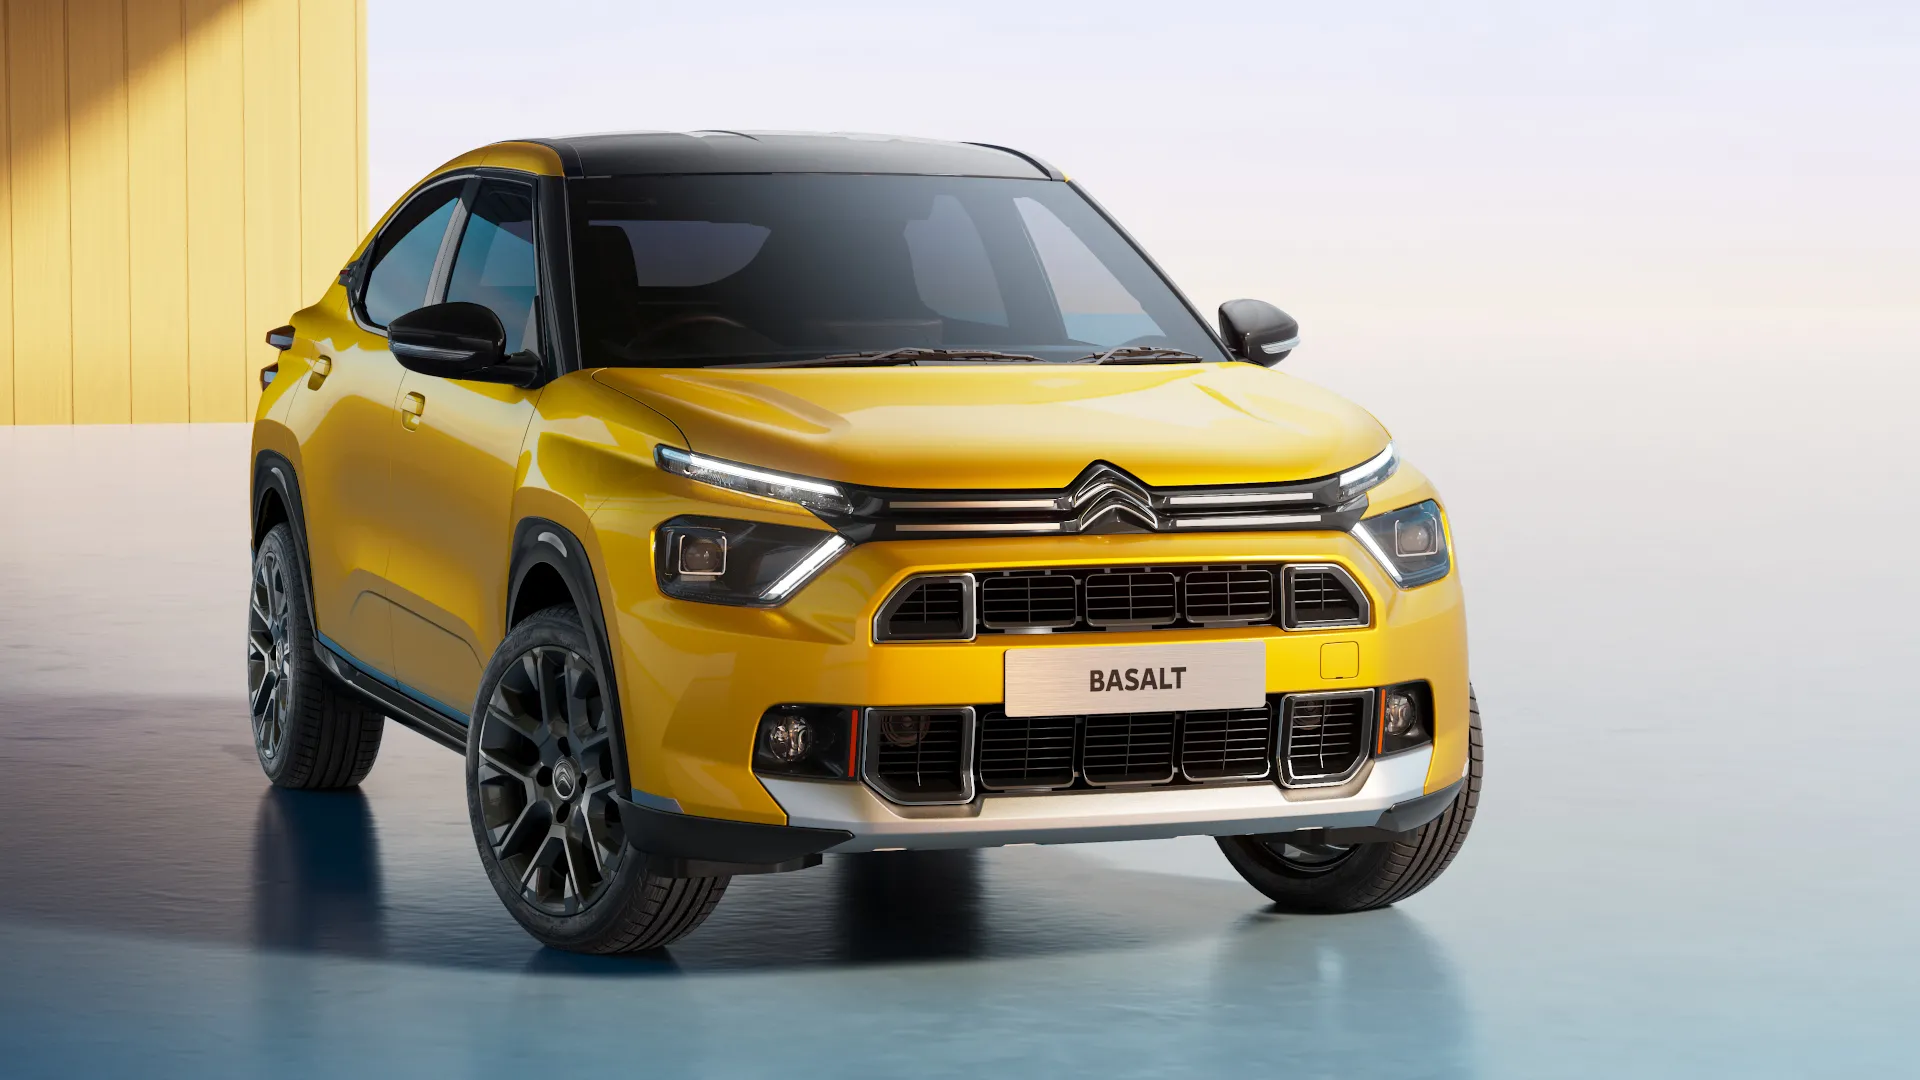 El Citroën Basalt adelanta un nuevo SUV Coupé, pero no llegará a Europa